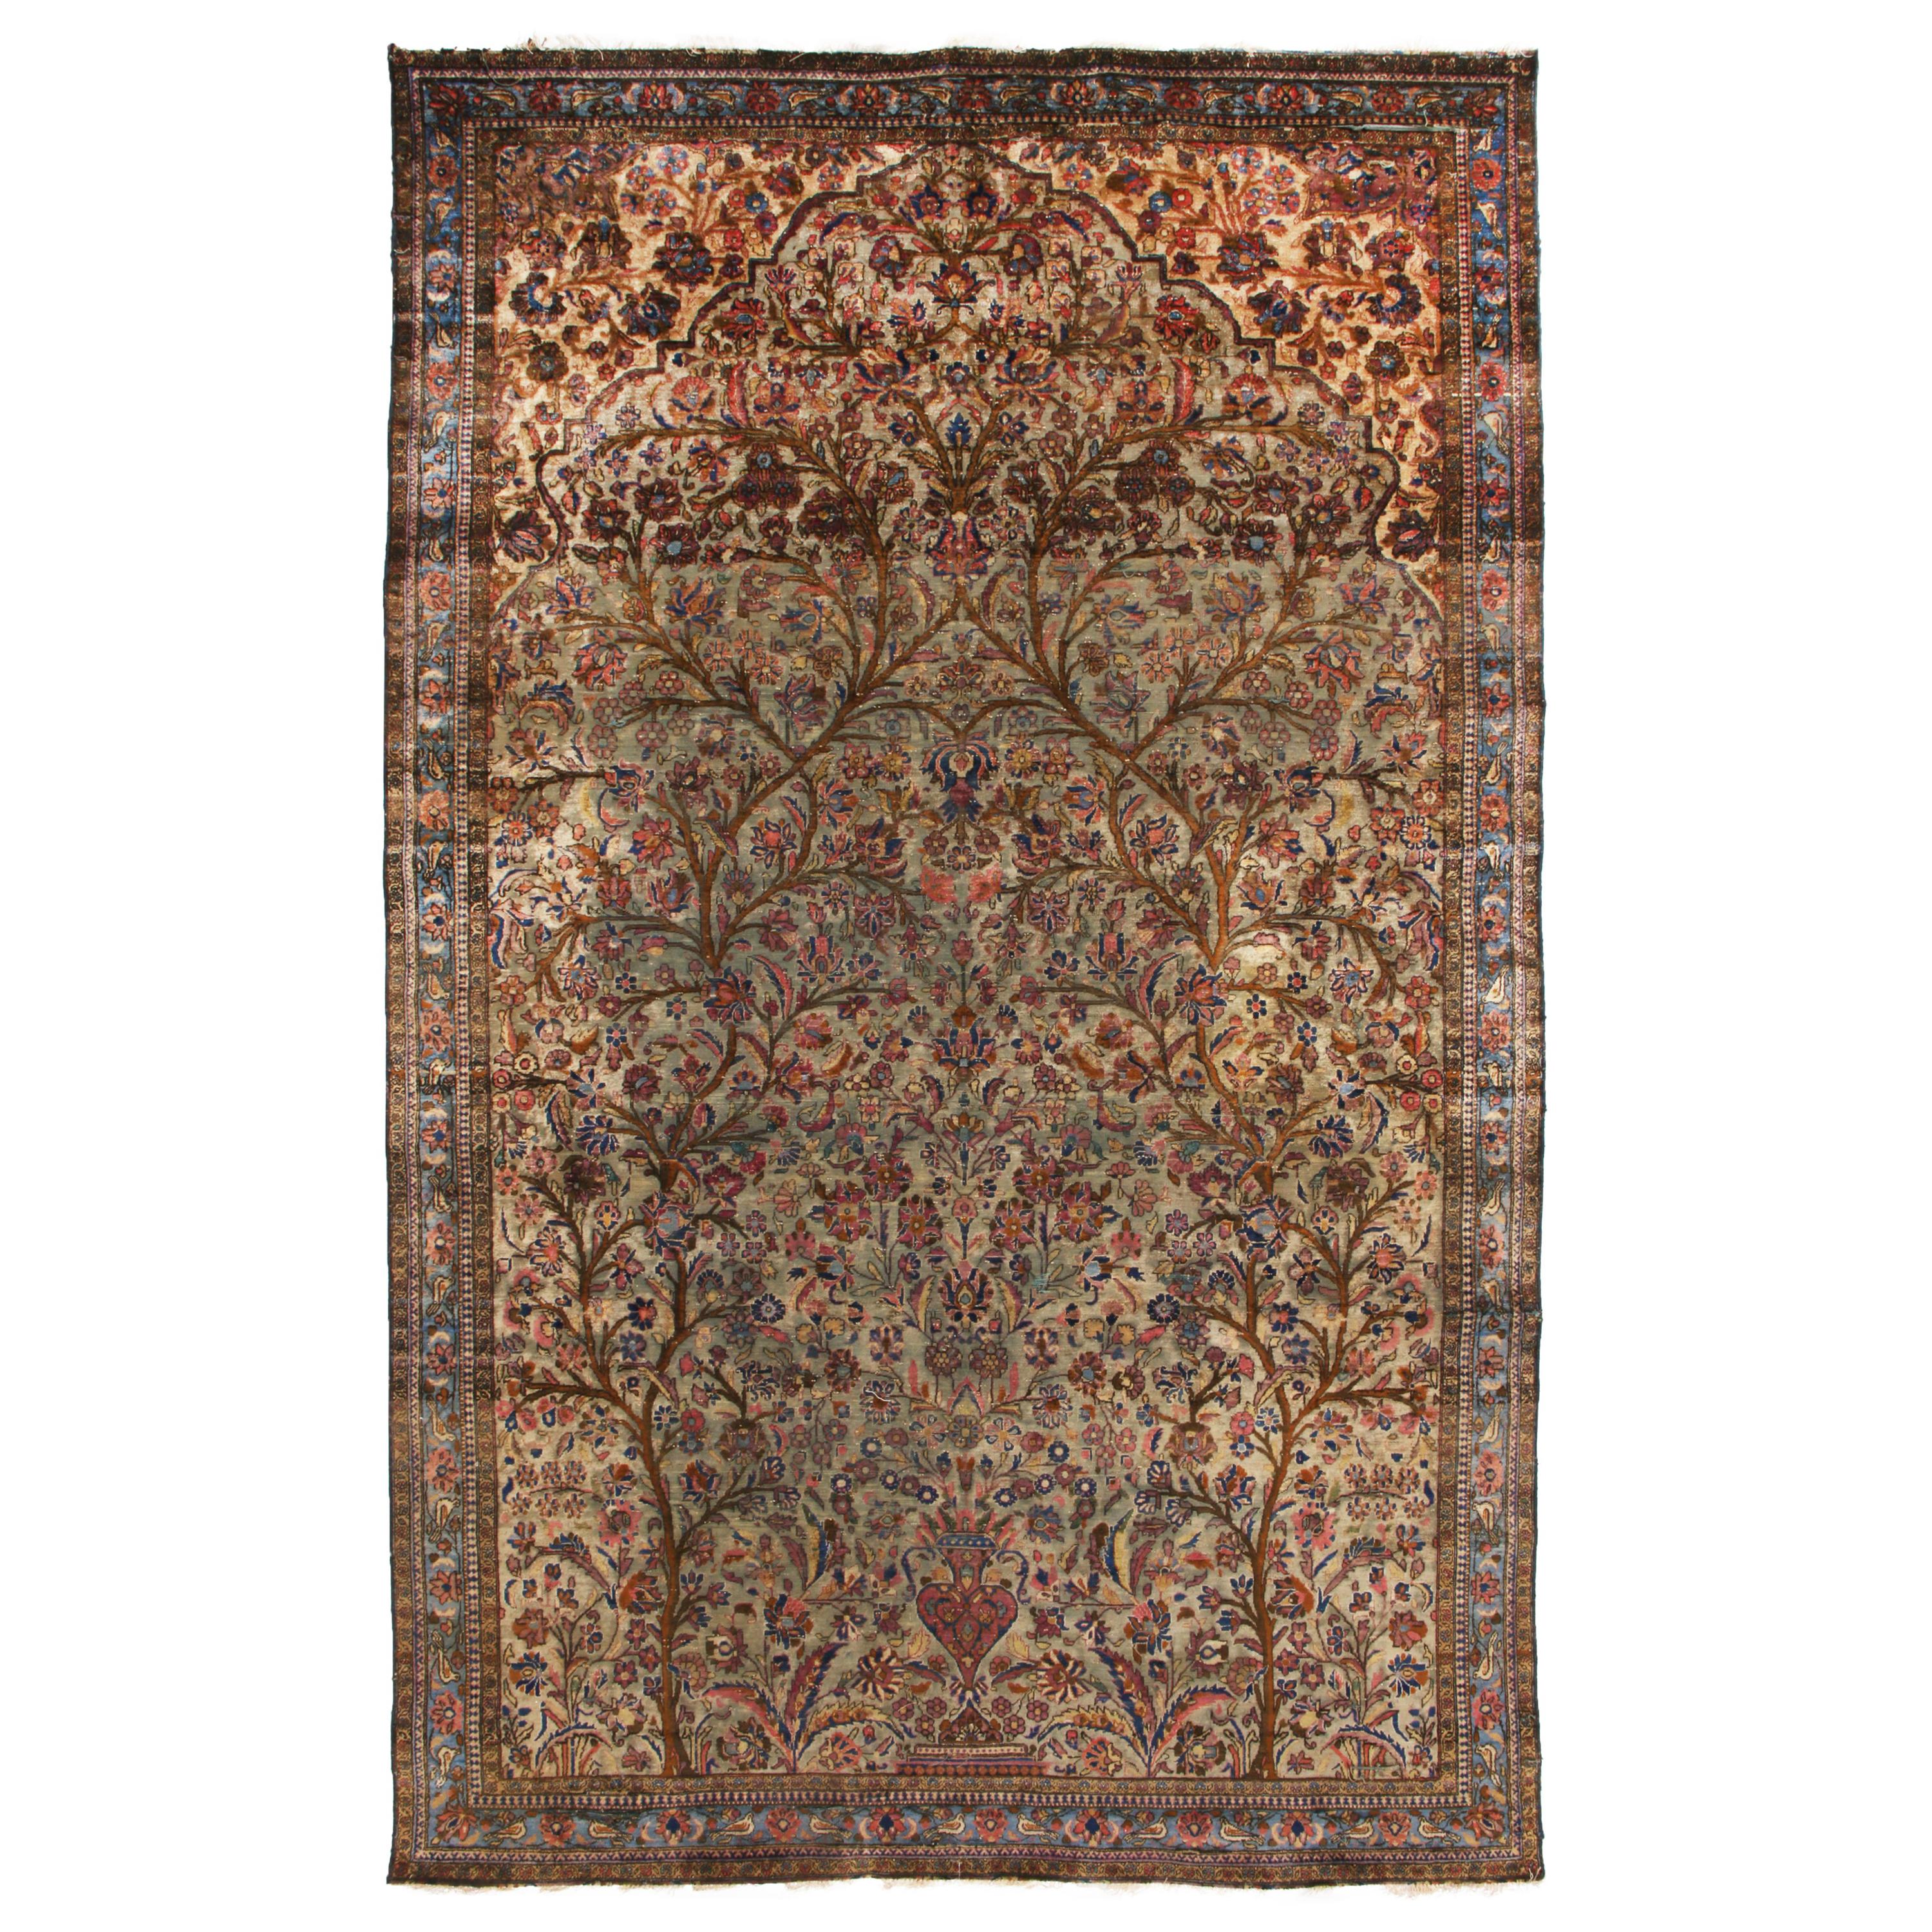 Handgeknüpfter antiker persischer Teppich in Beige-Braun mit Blumenmuster von Teppich & Kelim im Angebot